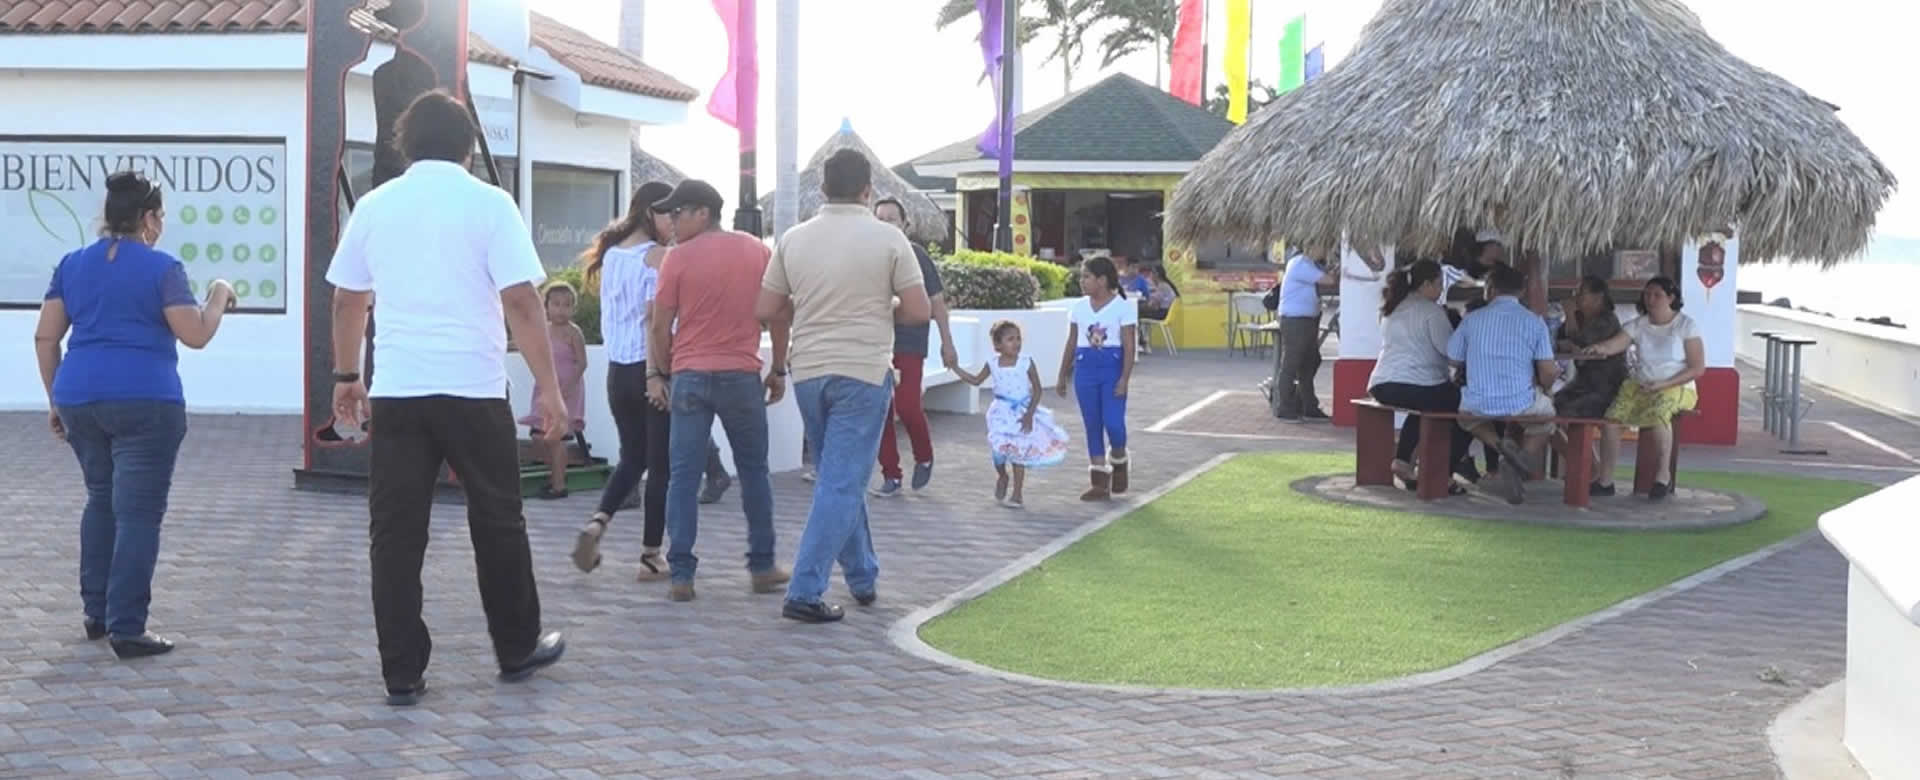 Atracciones del Puerto Salvador Allende enamoran a familias nicaragüenses